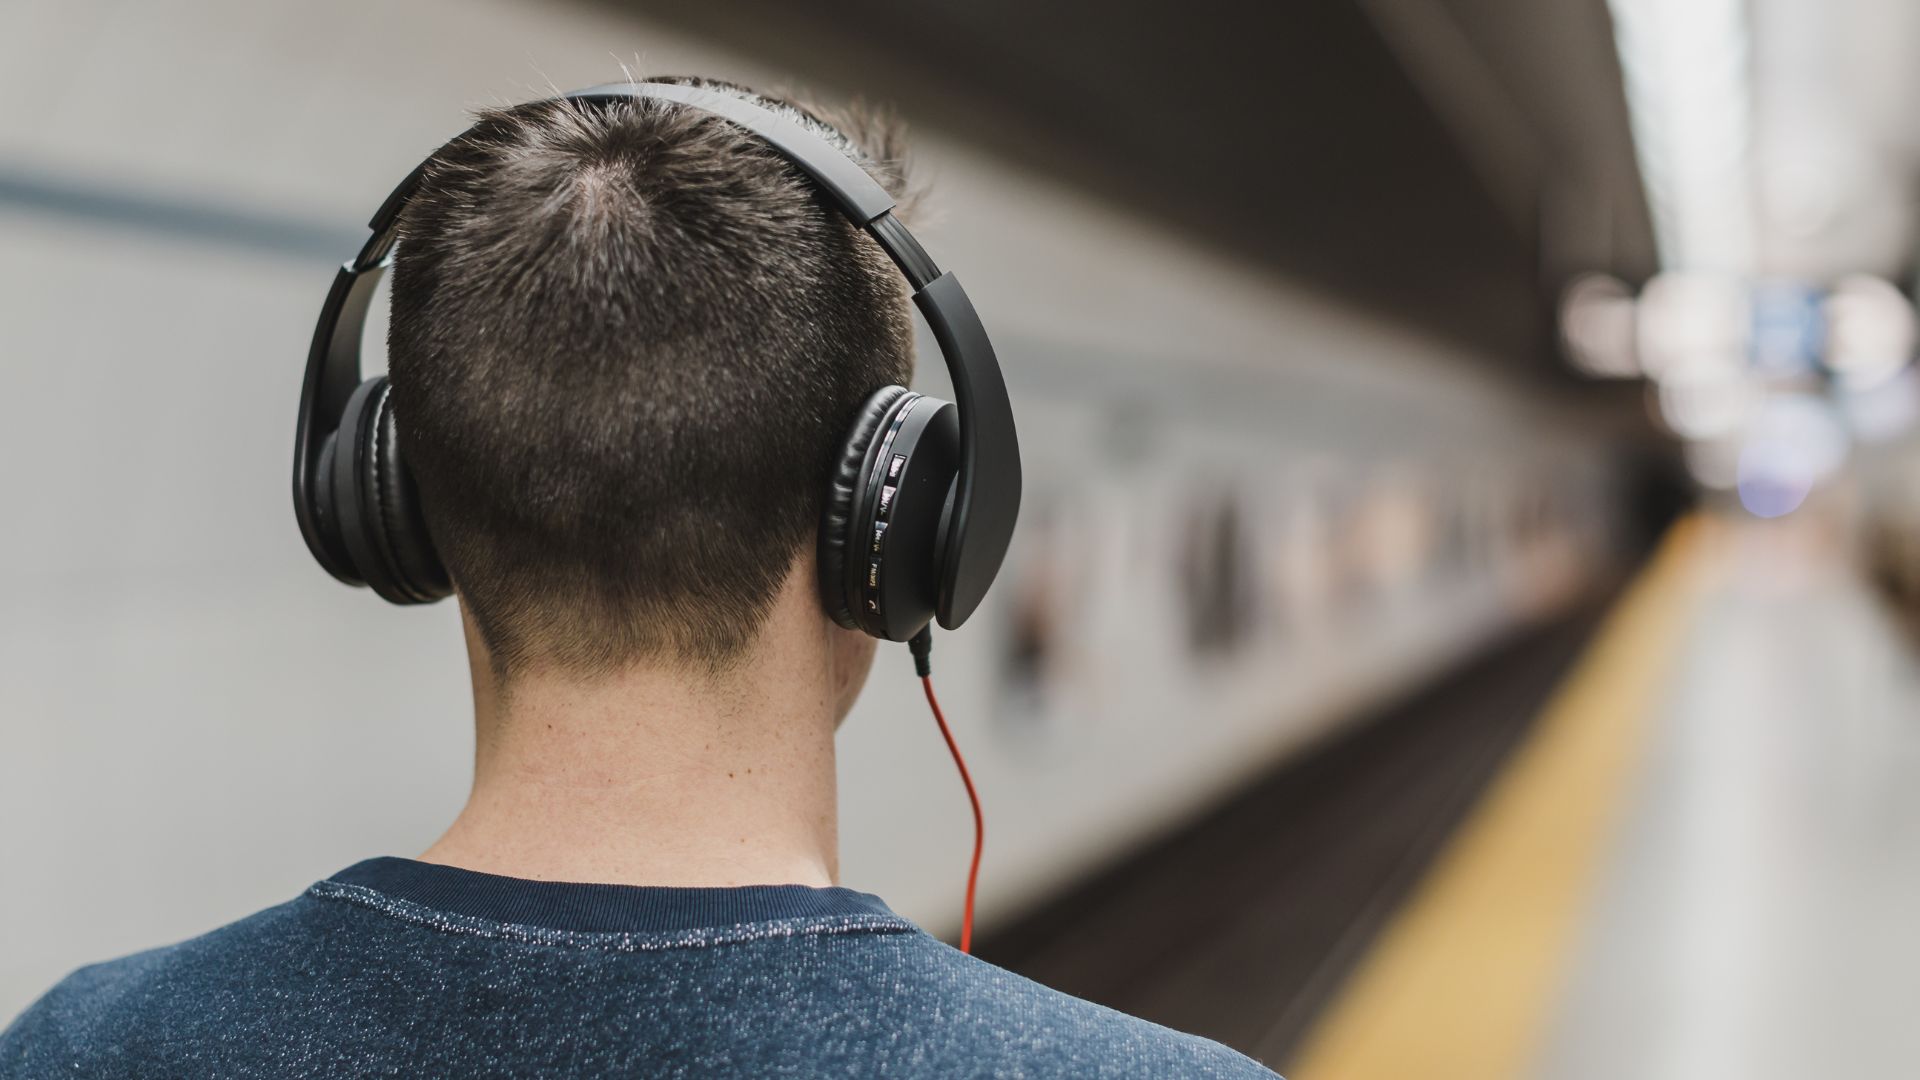 La música alta en auriculares puede dañar la audición de los jóvenes y provocar tinnitus